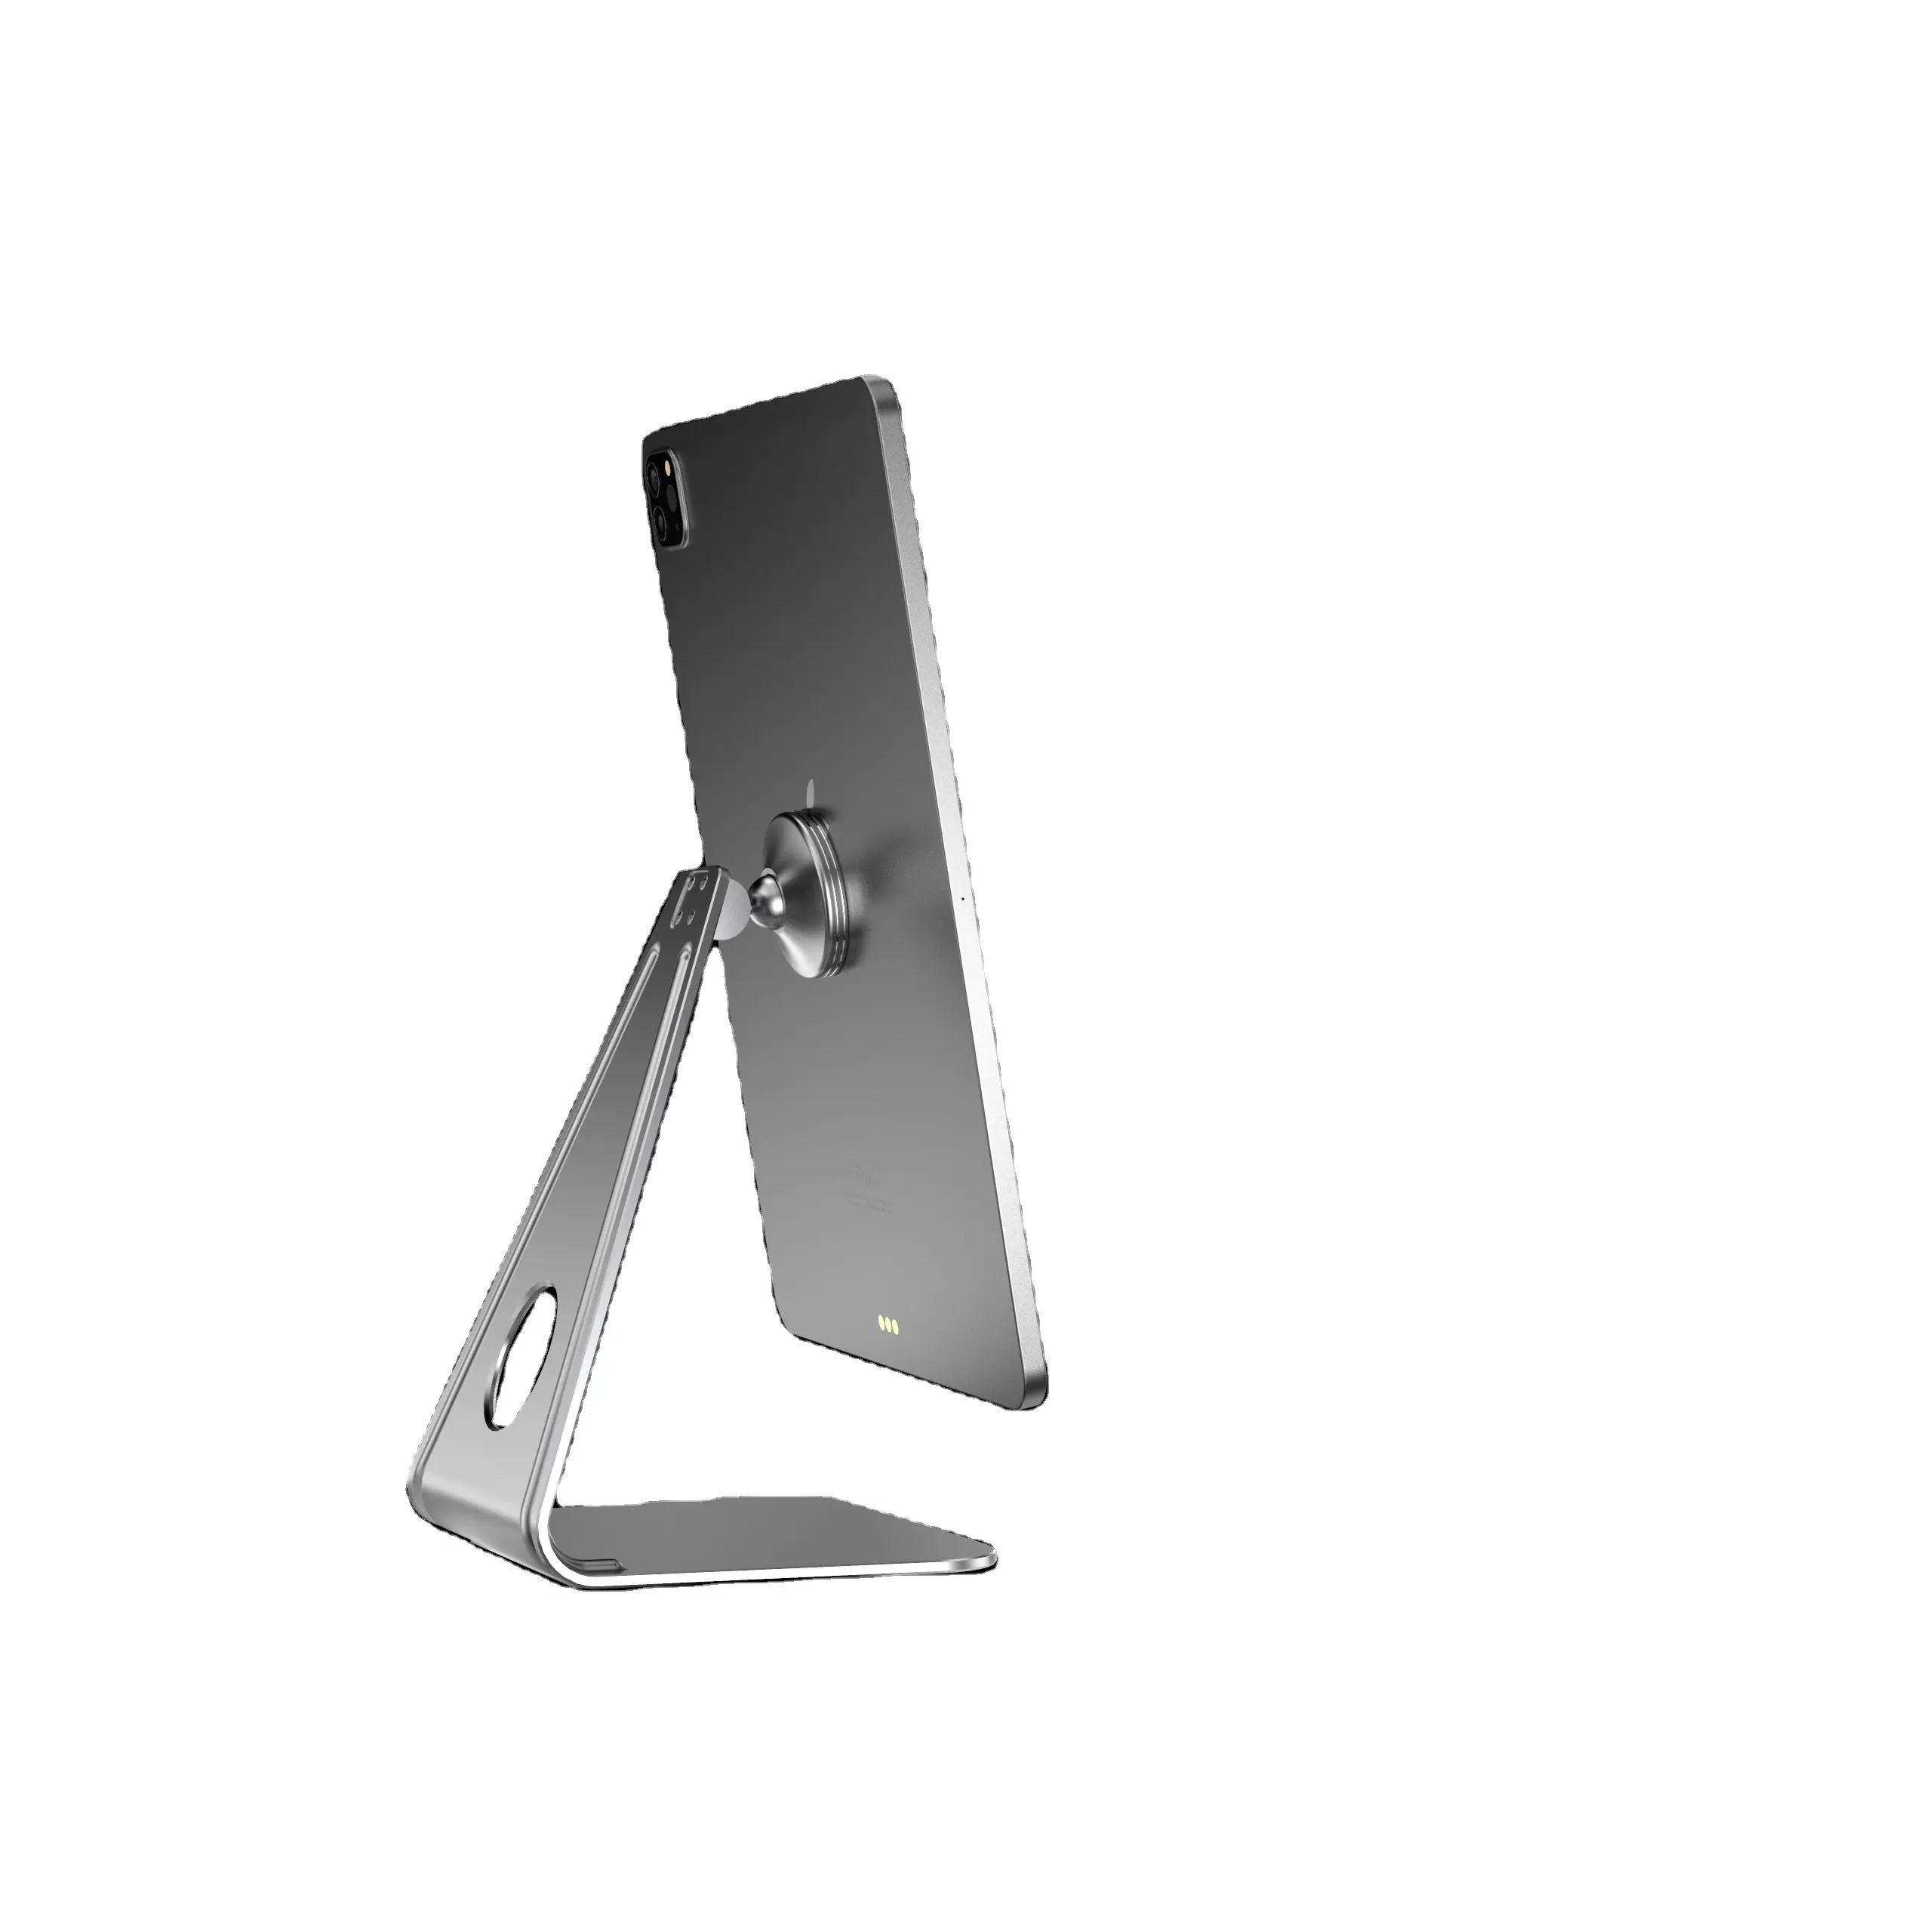 אמזון מכר אלומיניום סגסוגת נייד שולחן העבודה Tablet נייד מחזיק עבור iPad 360 תואר מגנטי Tablet Stand